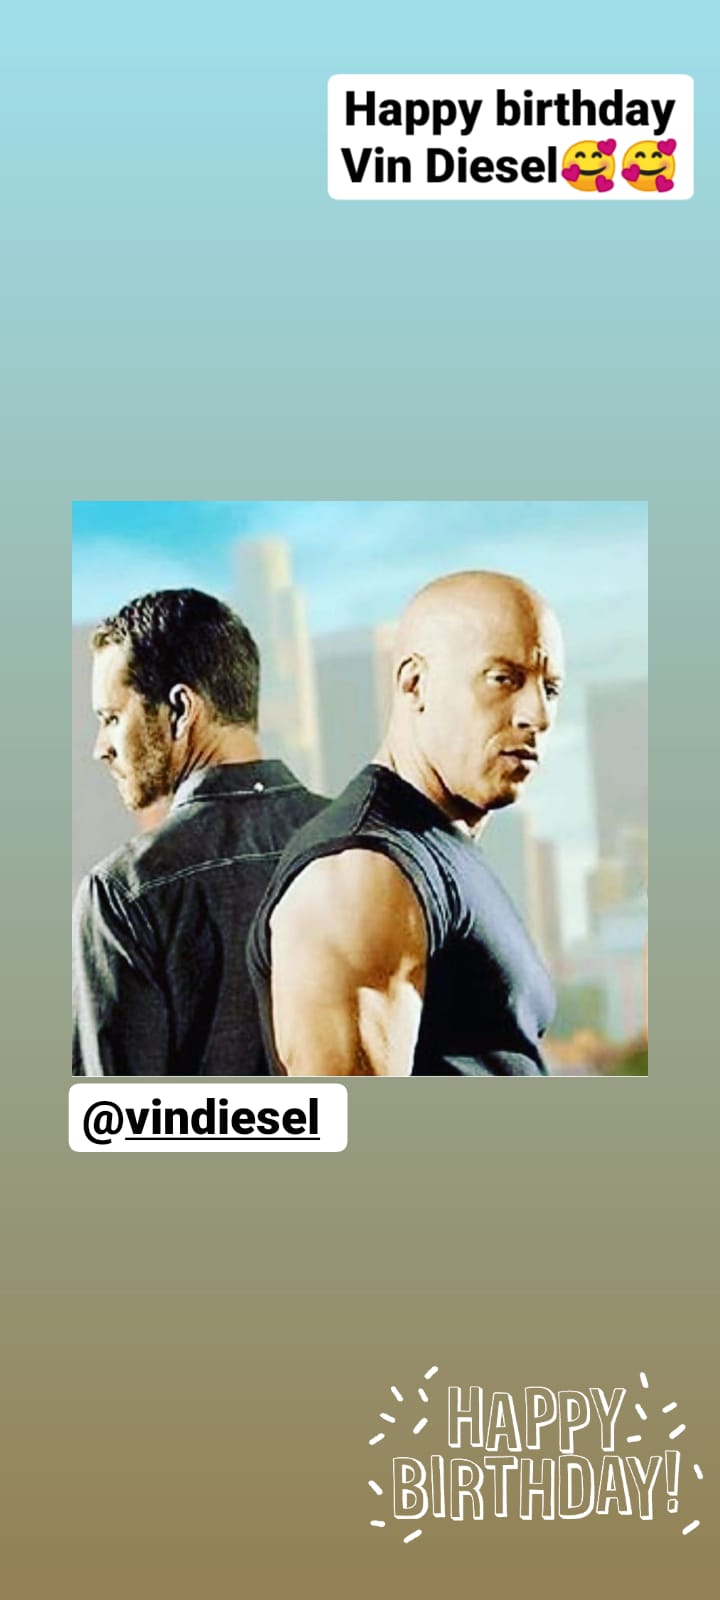 Happy birthday Vin Diesel 